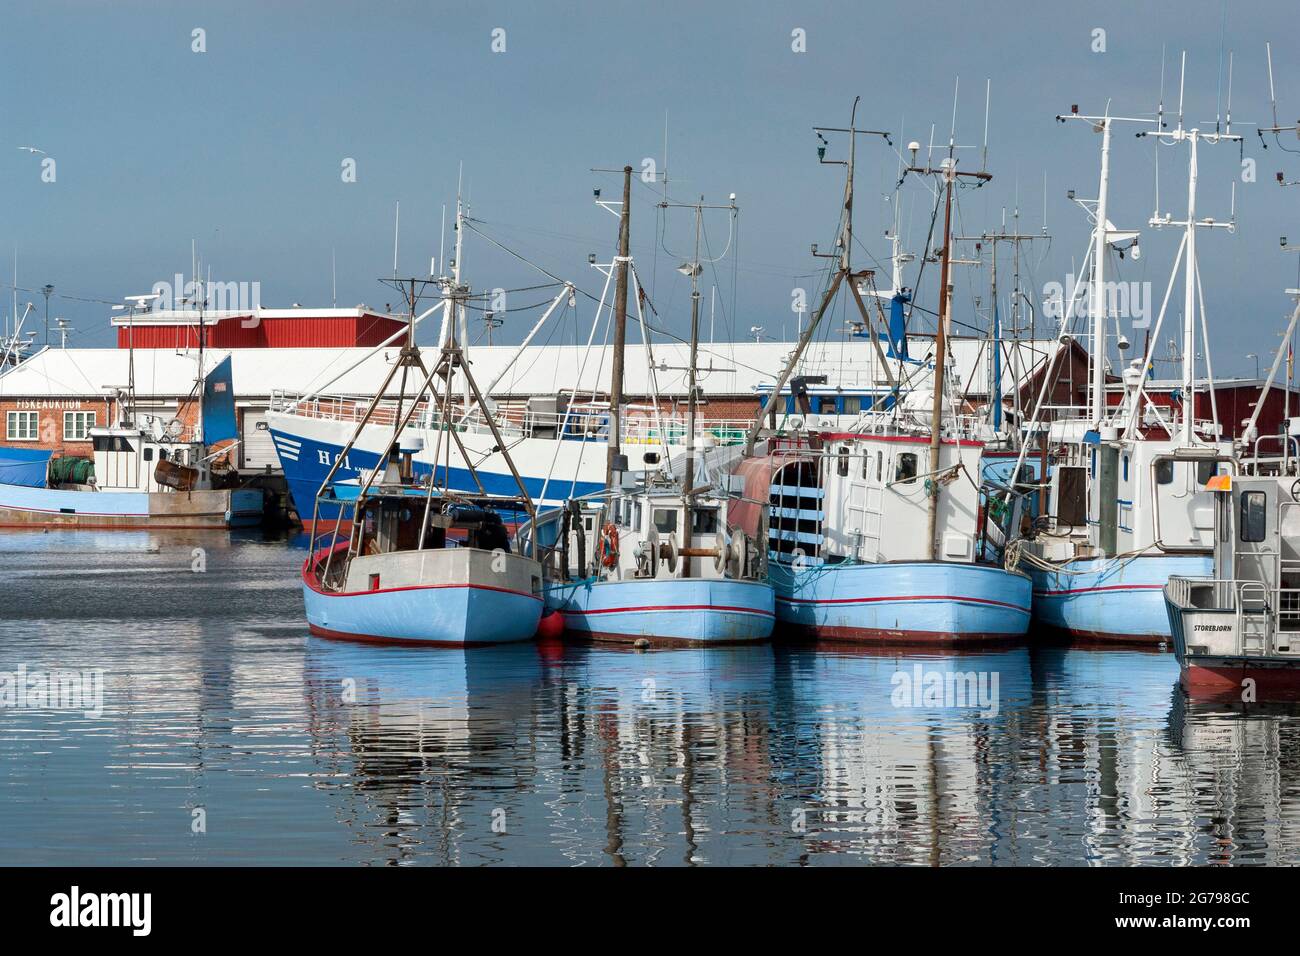 Danemark, île de la Zélande, Gribskov-Gilleleje, le plus grand port de pêche de l'île de la Zélande près de Gilleleje, station balnéaire et village de pêche dans le nord de la plus grande île de la mer Baltique. Banque D'Images